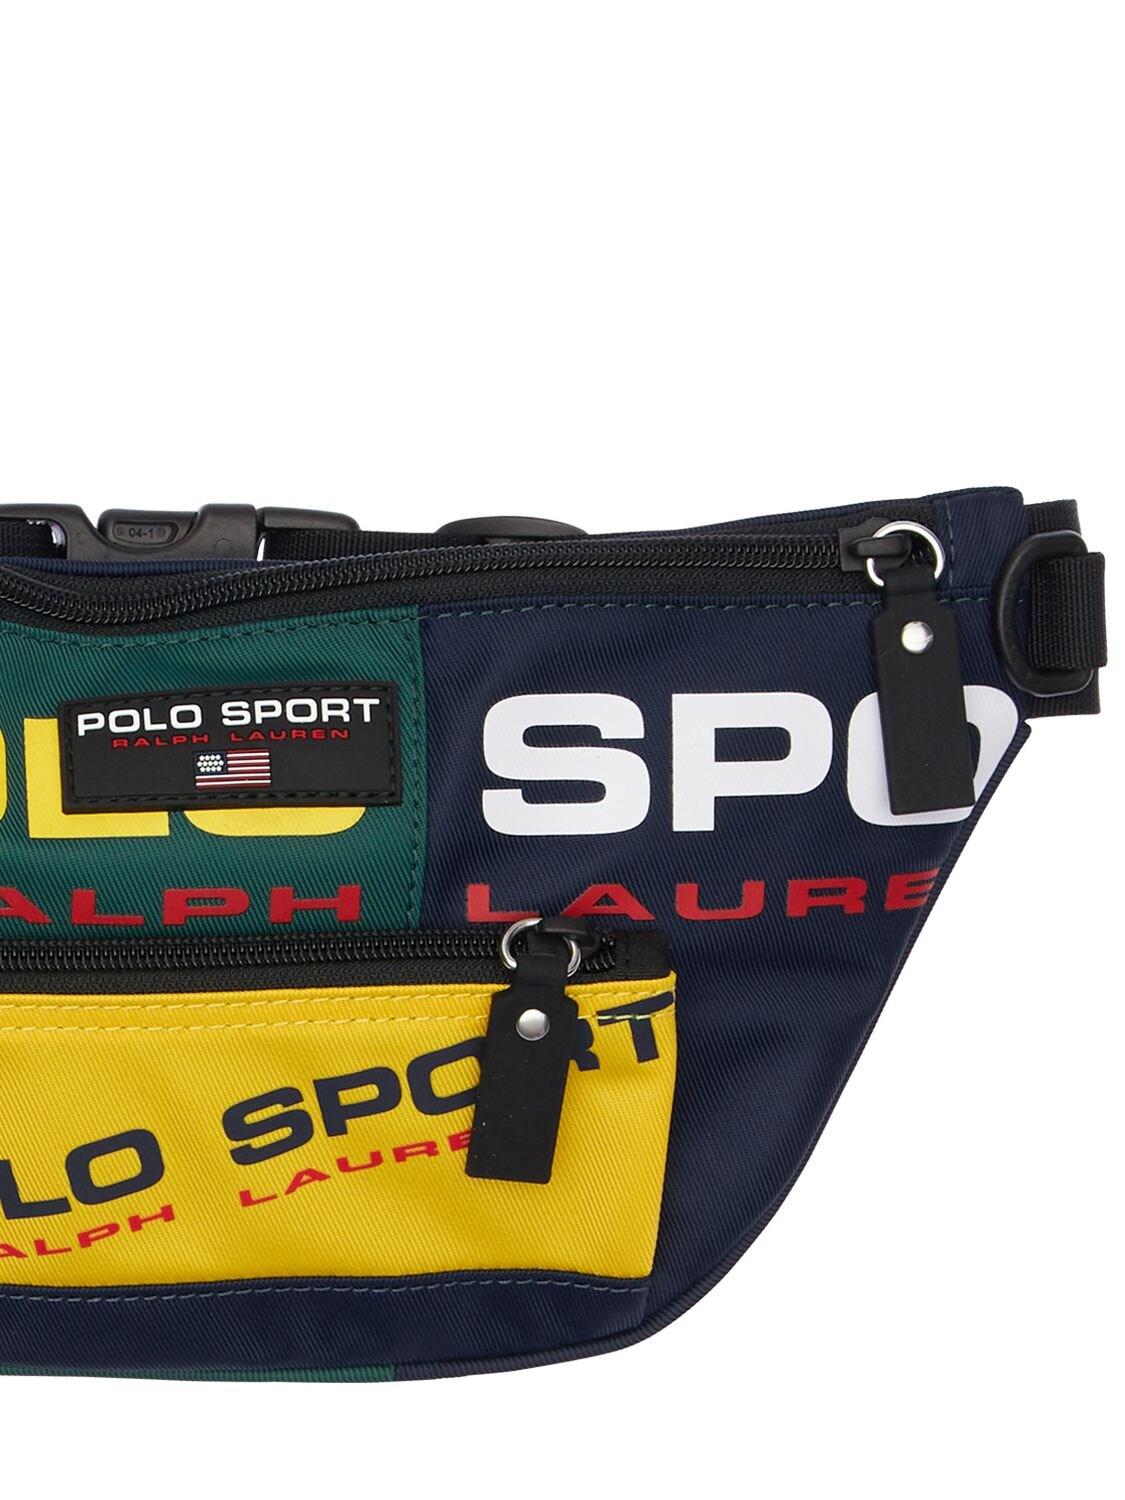 Polo Ralph Lauren Nylon Polo Sport Waist Pack for Men | Lyst